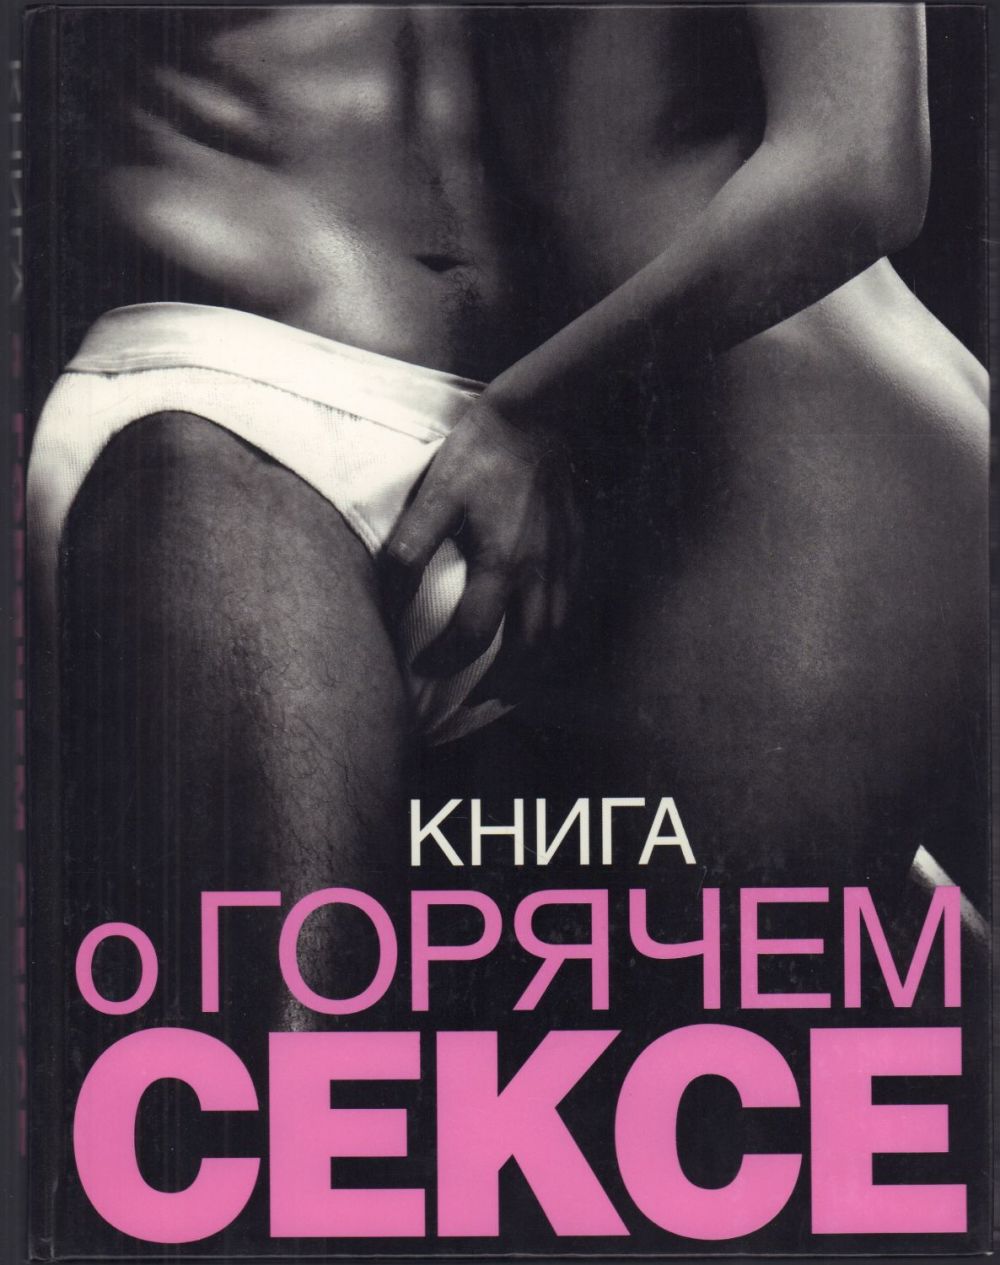 Читать Бесплатно Книгу Эротика Секс